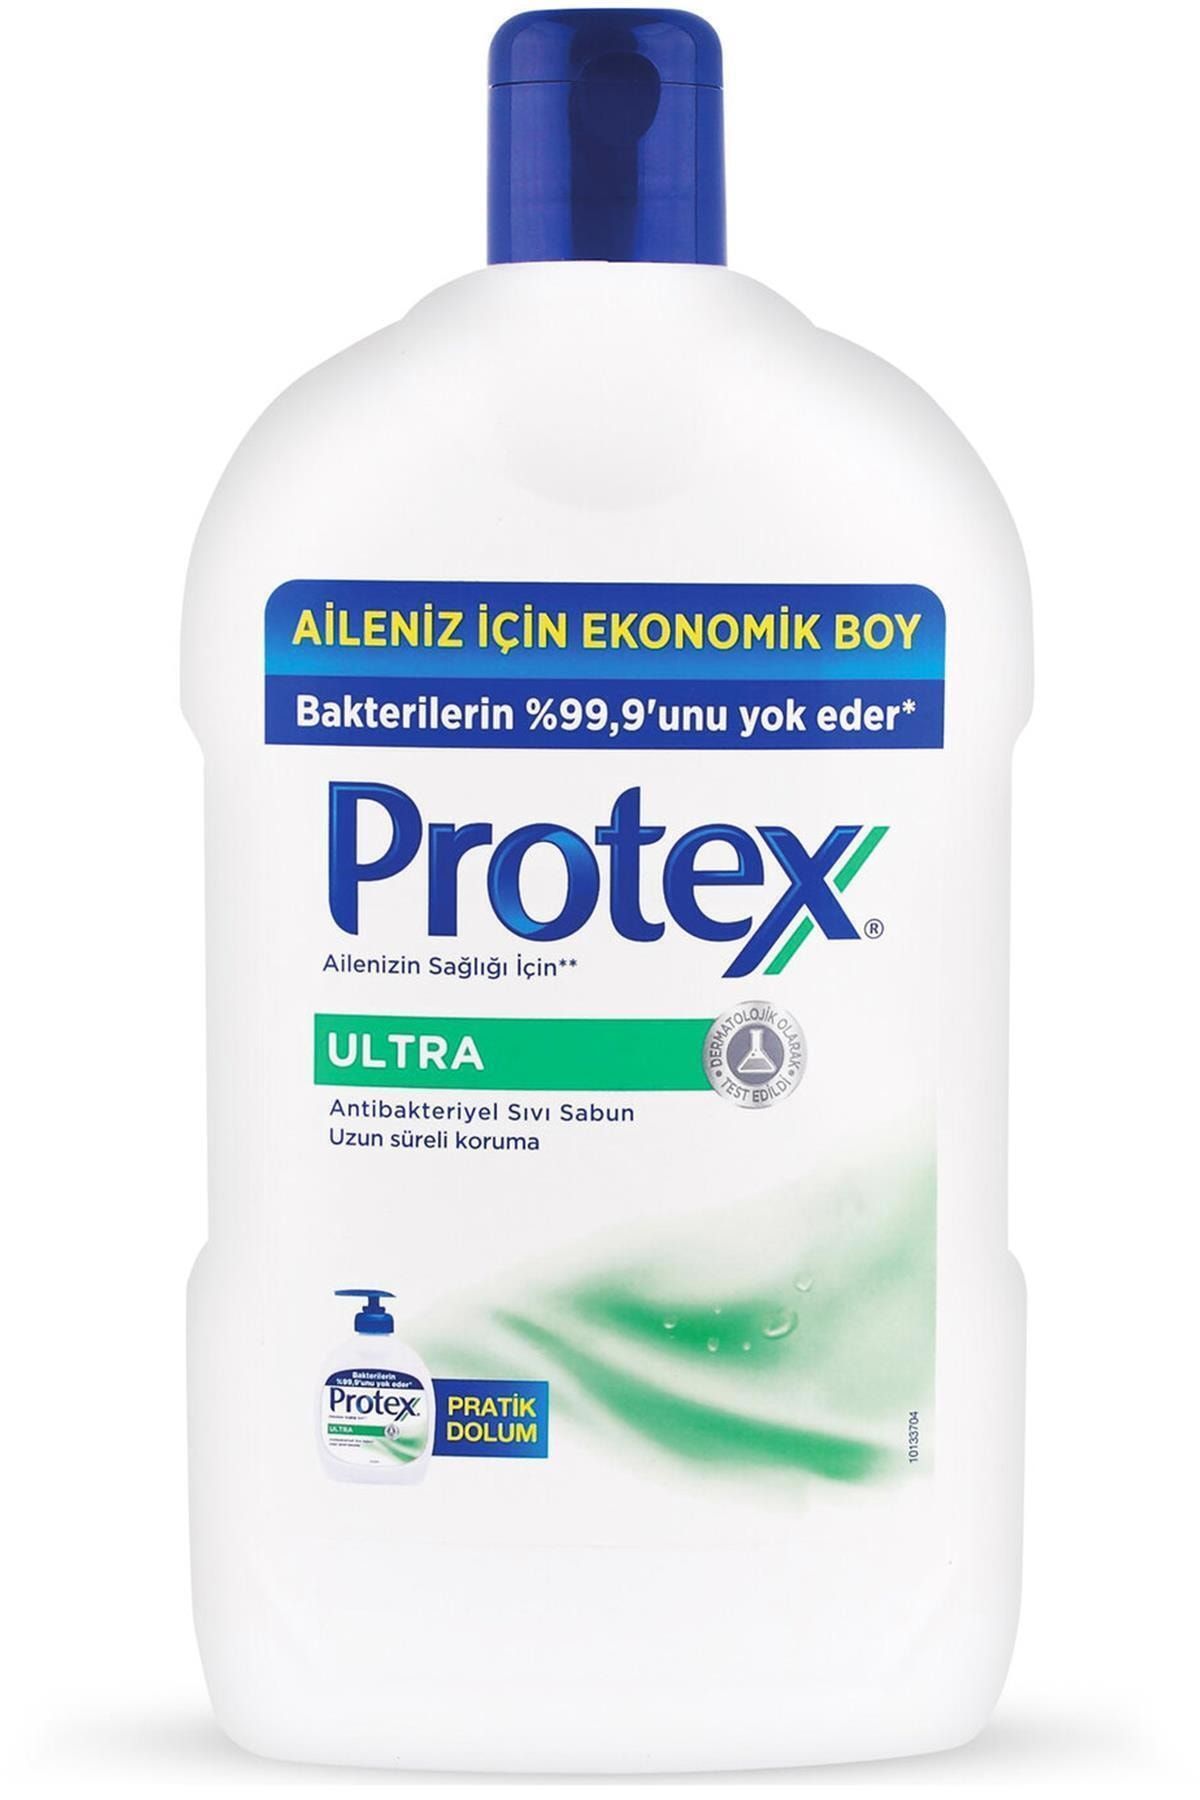 Protex Ultra Uzun Süreli Koruma Antibakteriyel Sıvı Sabun 1500 Ml